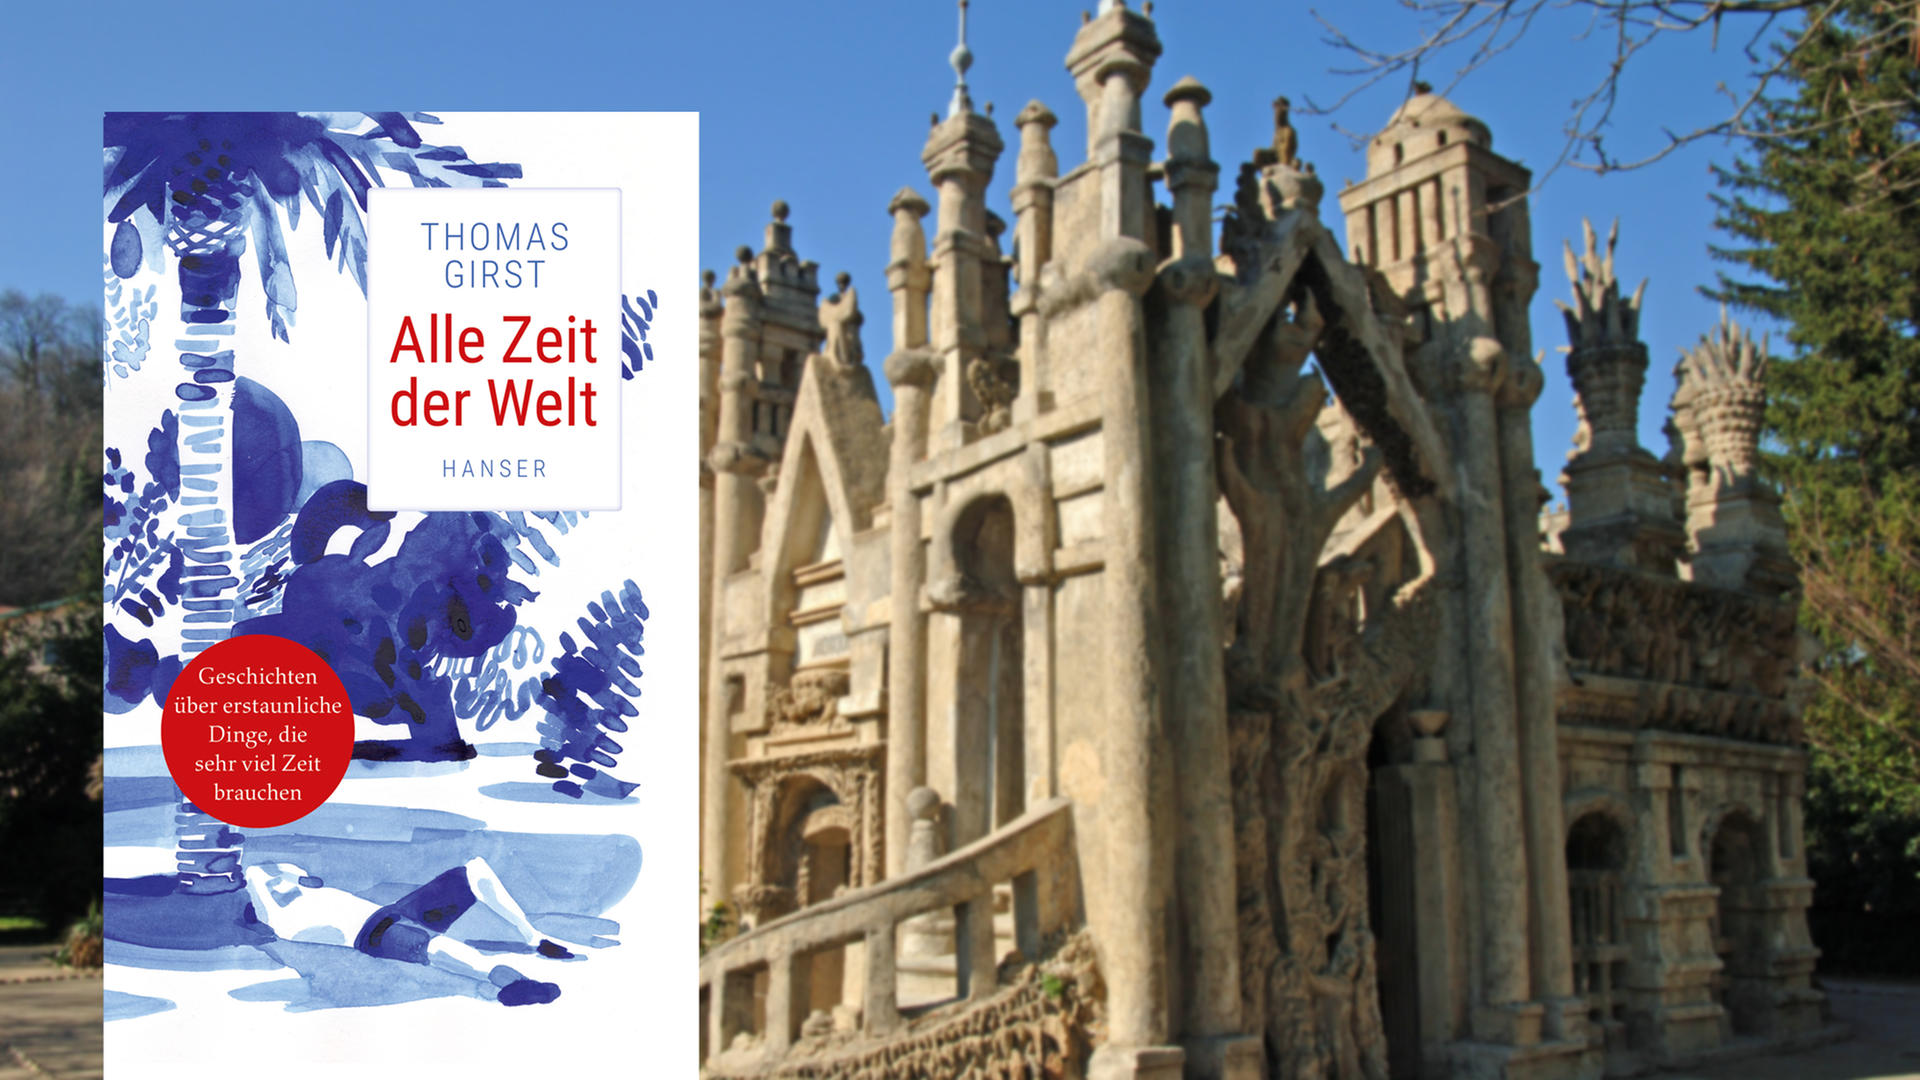 Im Vordergrund ist das Cover des Buches "Alle Zeit der Welt" von Thomas Girst. Im Hintergrund ist das sogenannte Palais Ideal in Hauterives in der Provence, das der französische Briefbote Ferdinand Cheval Anfang des 19. Jahrhunderts rund 33 Jahre lang baute.